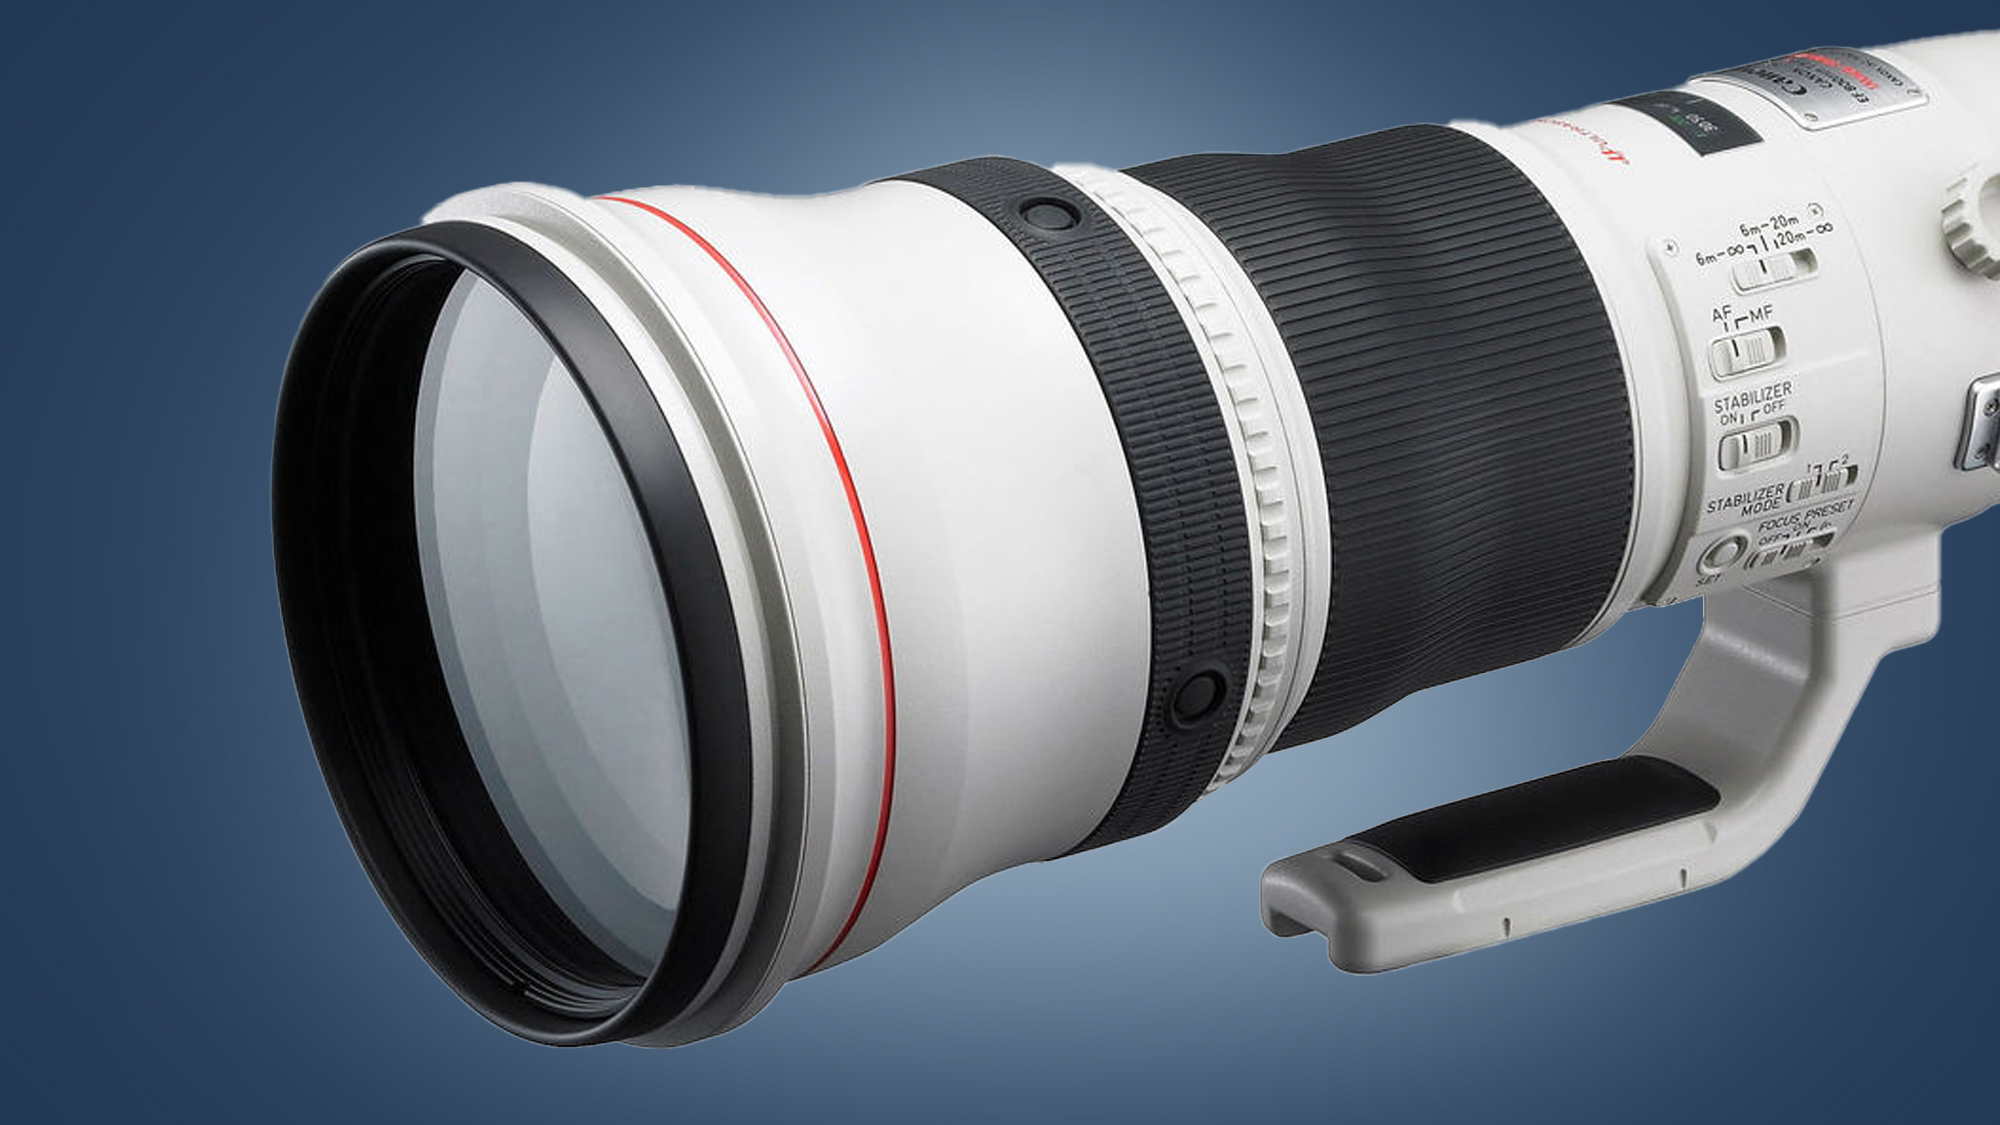 Canon leak reveals monster telephoto lenses to take the battle to Nikon